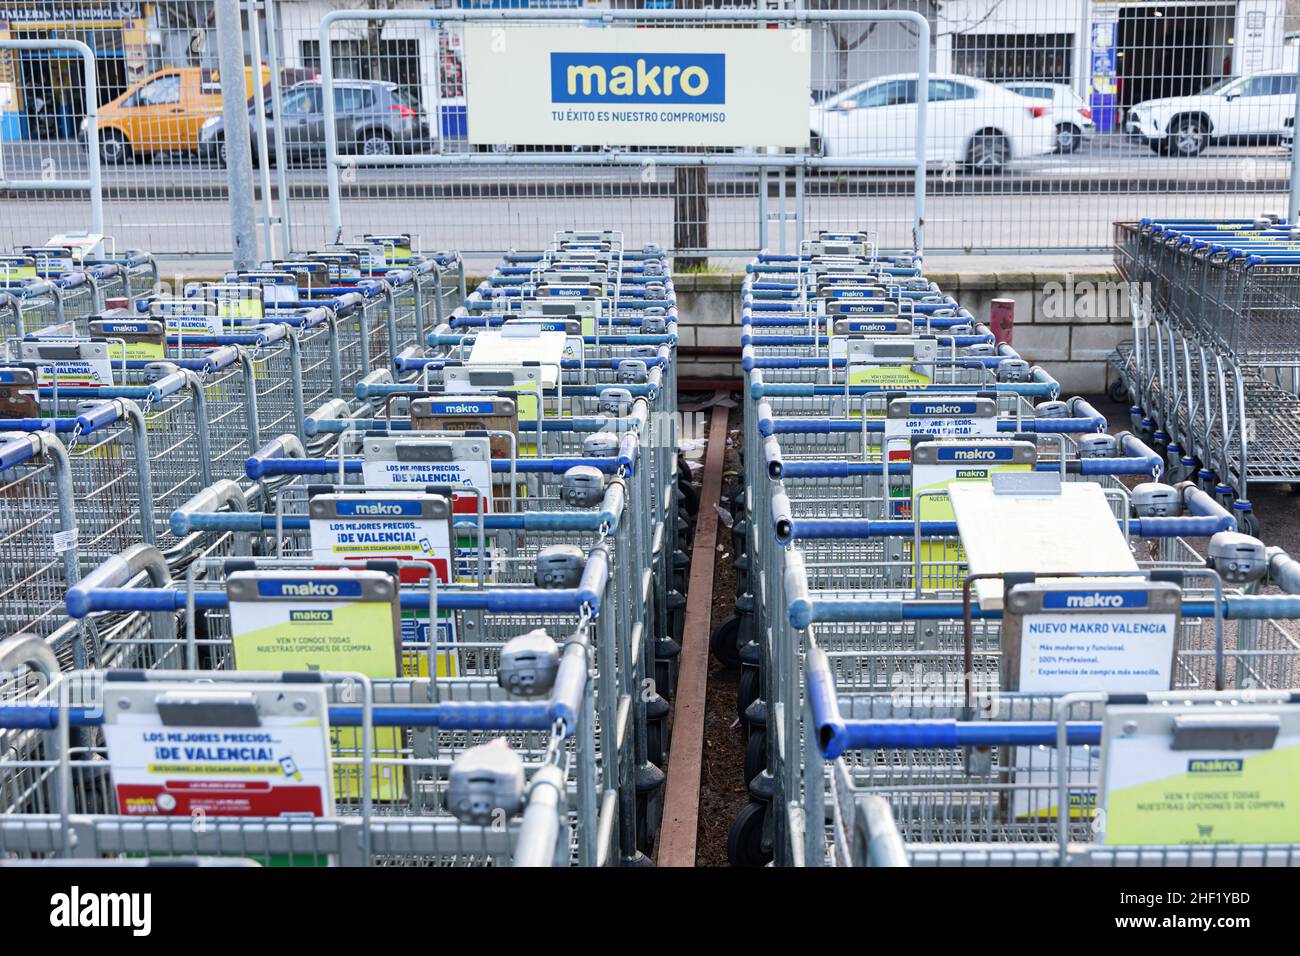 VALENCIA, SPANIEN - 13. JANUAR 2022: Makro ist eine internationale Marke von Lagerclubs, die Lebensmittel und Non-Food-Produkte verkauft Stockfoto